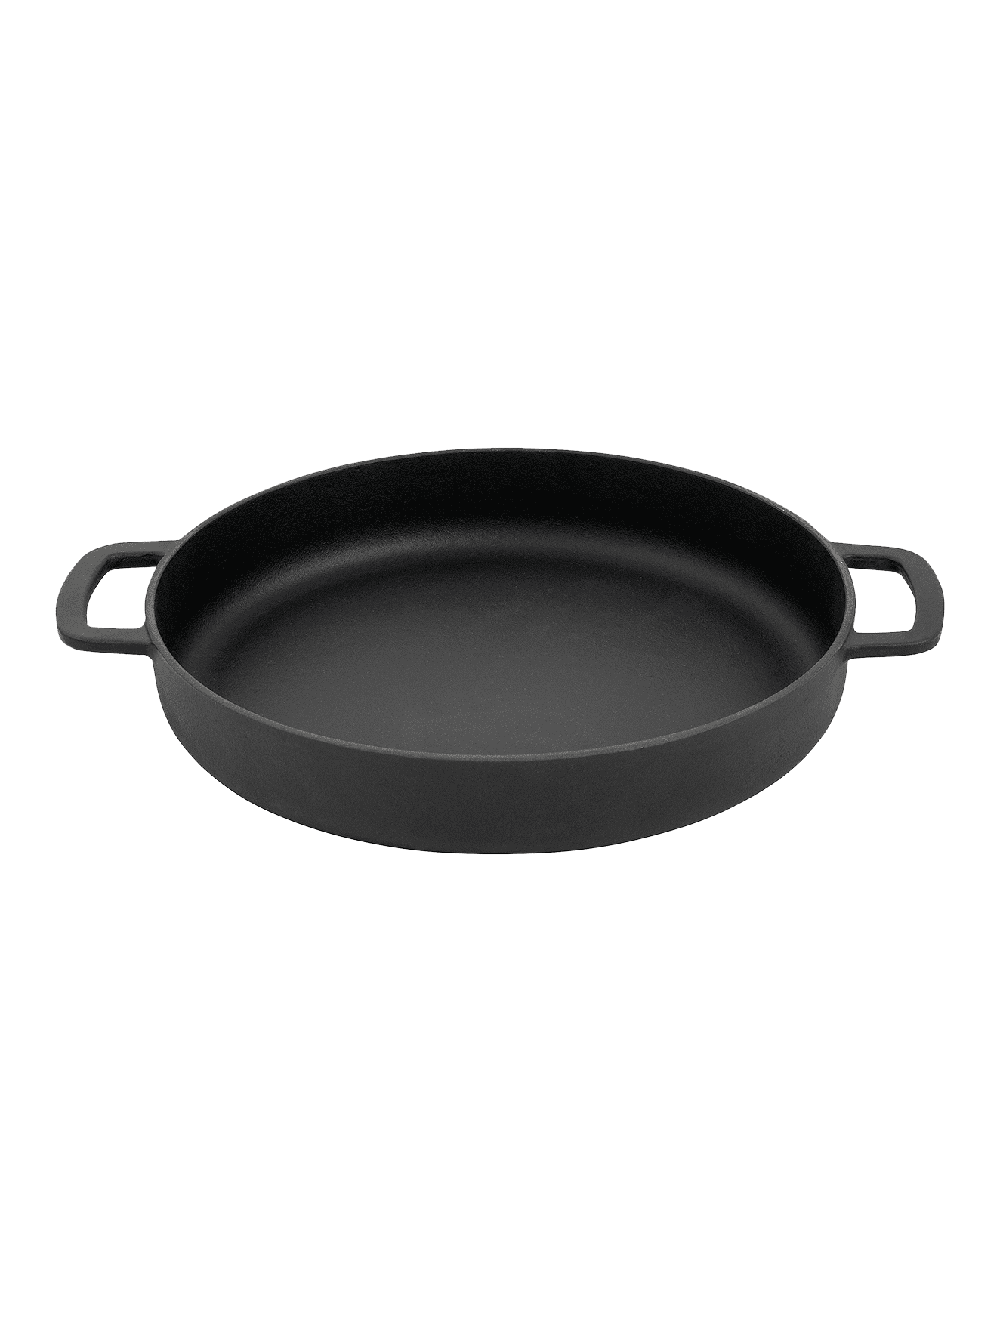 Combekk Sous-Chef double handle Black 28 cm Combekk Chilliwack BBQ Supply